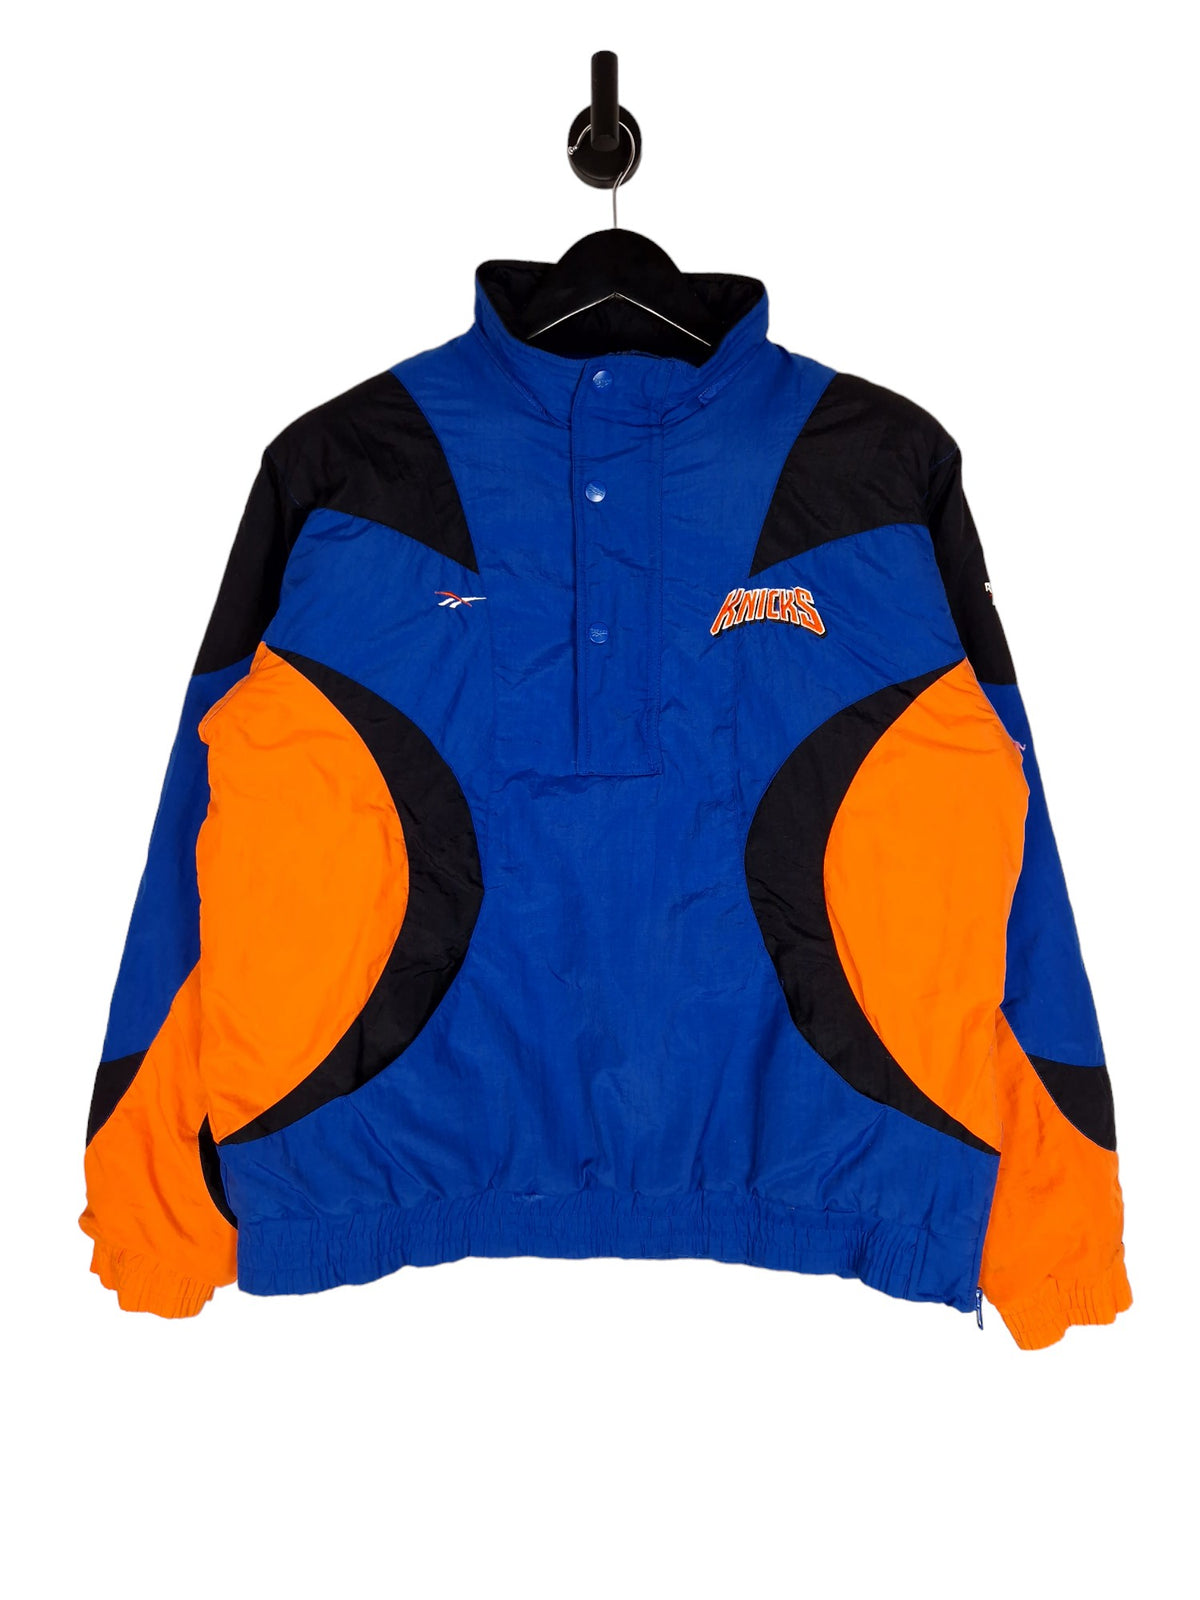 90's Reebok New York Knicks Jacket - Size Medium